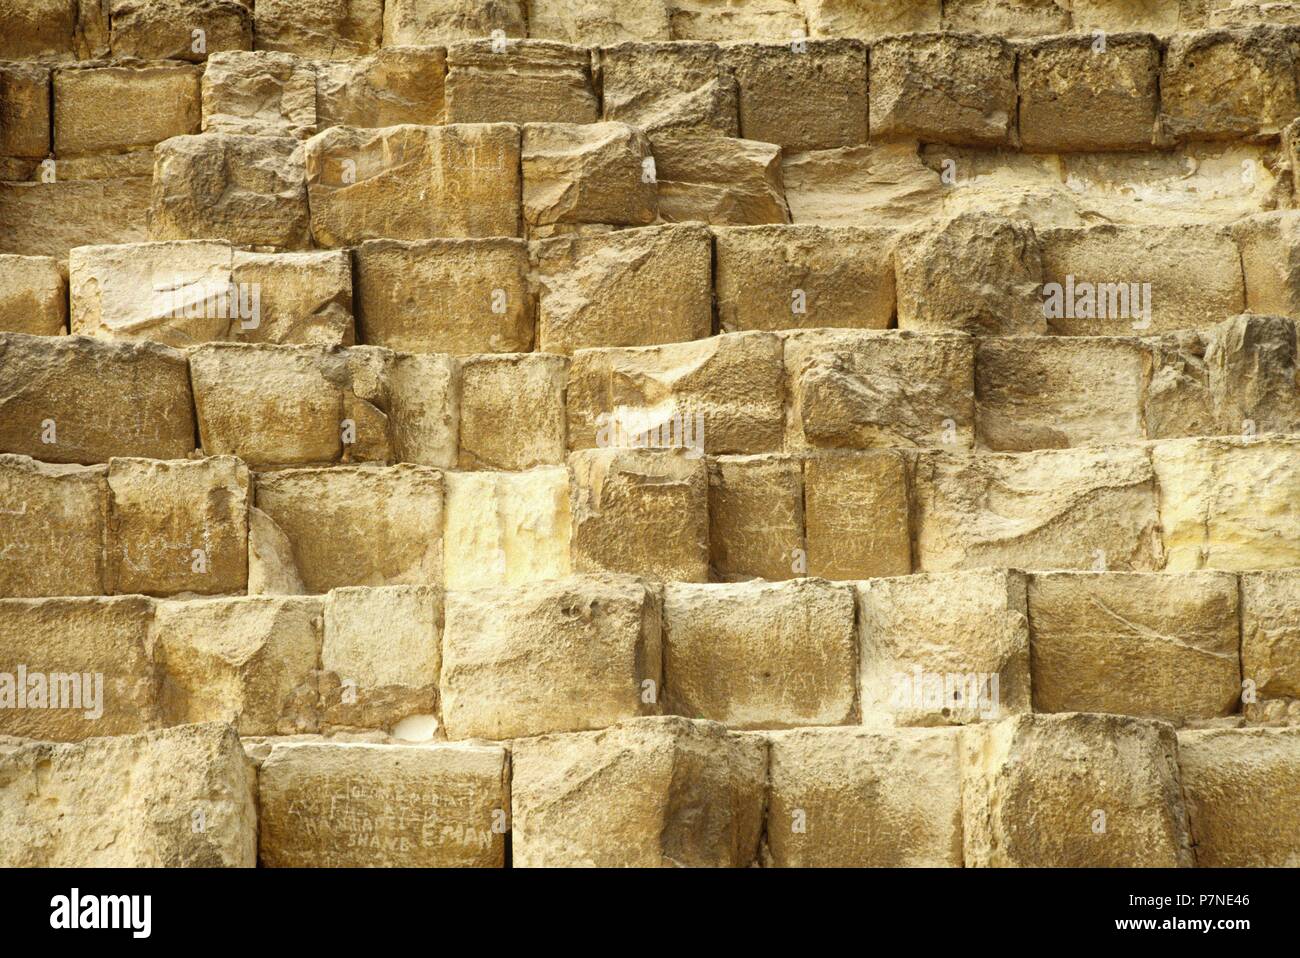 La pirámide de Micerino (nombre helenizado) o de Menkaura (según su nombre egipcio) es la menor de las tres célebres pirámides de la necrópolis de la meseta de Guiza. A Menkaura, faraón de la dinastía IV, se le atribuye ordenar construir esta pirámide. Stock Photo